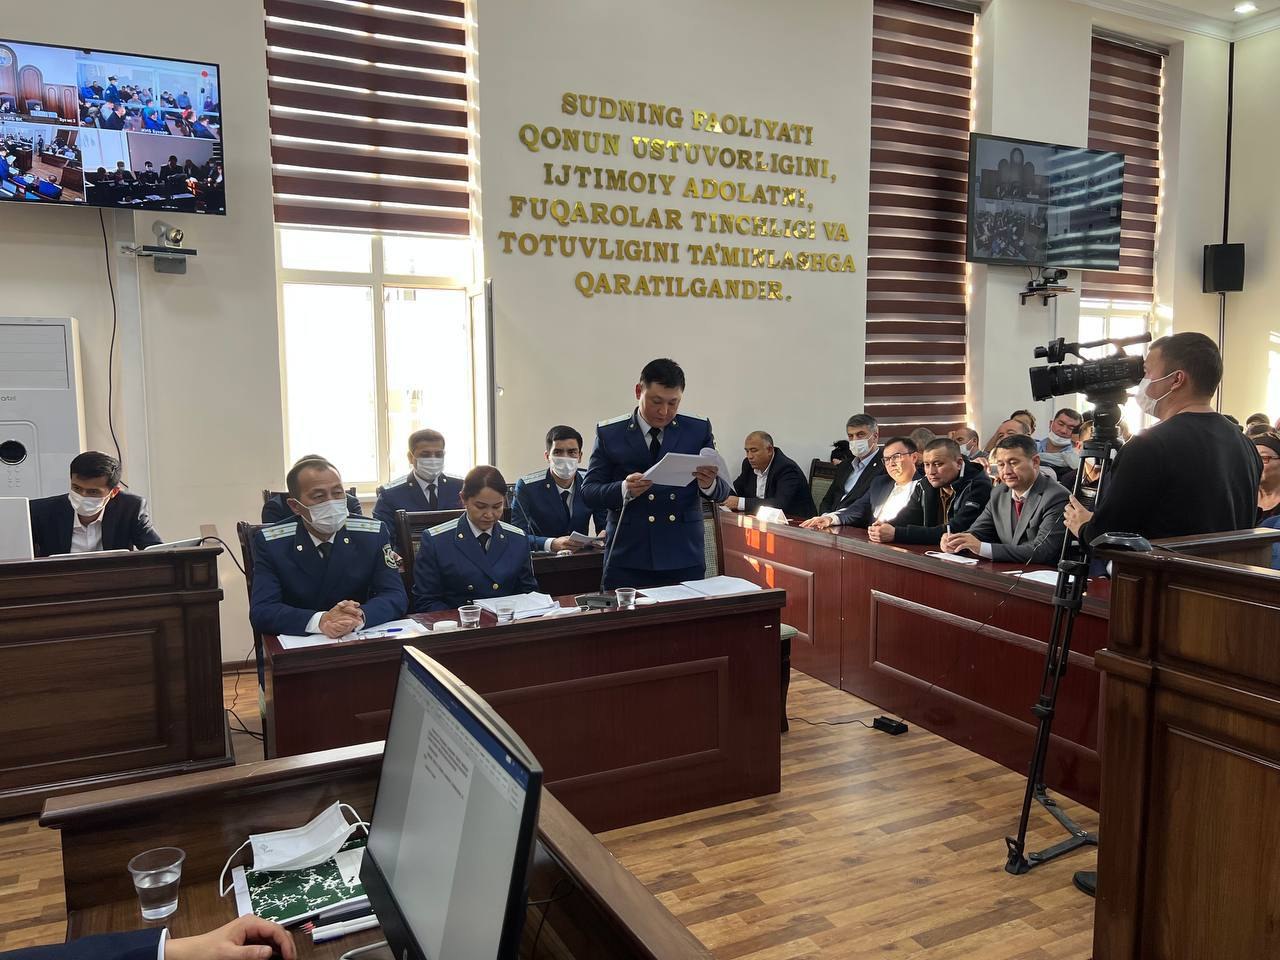 Члены комиссии участвуют во всех судебных процессах, связанных с массовыми беспорядками в Каракалпакстане